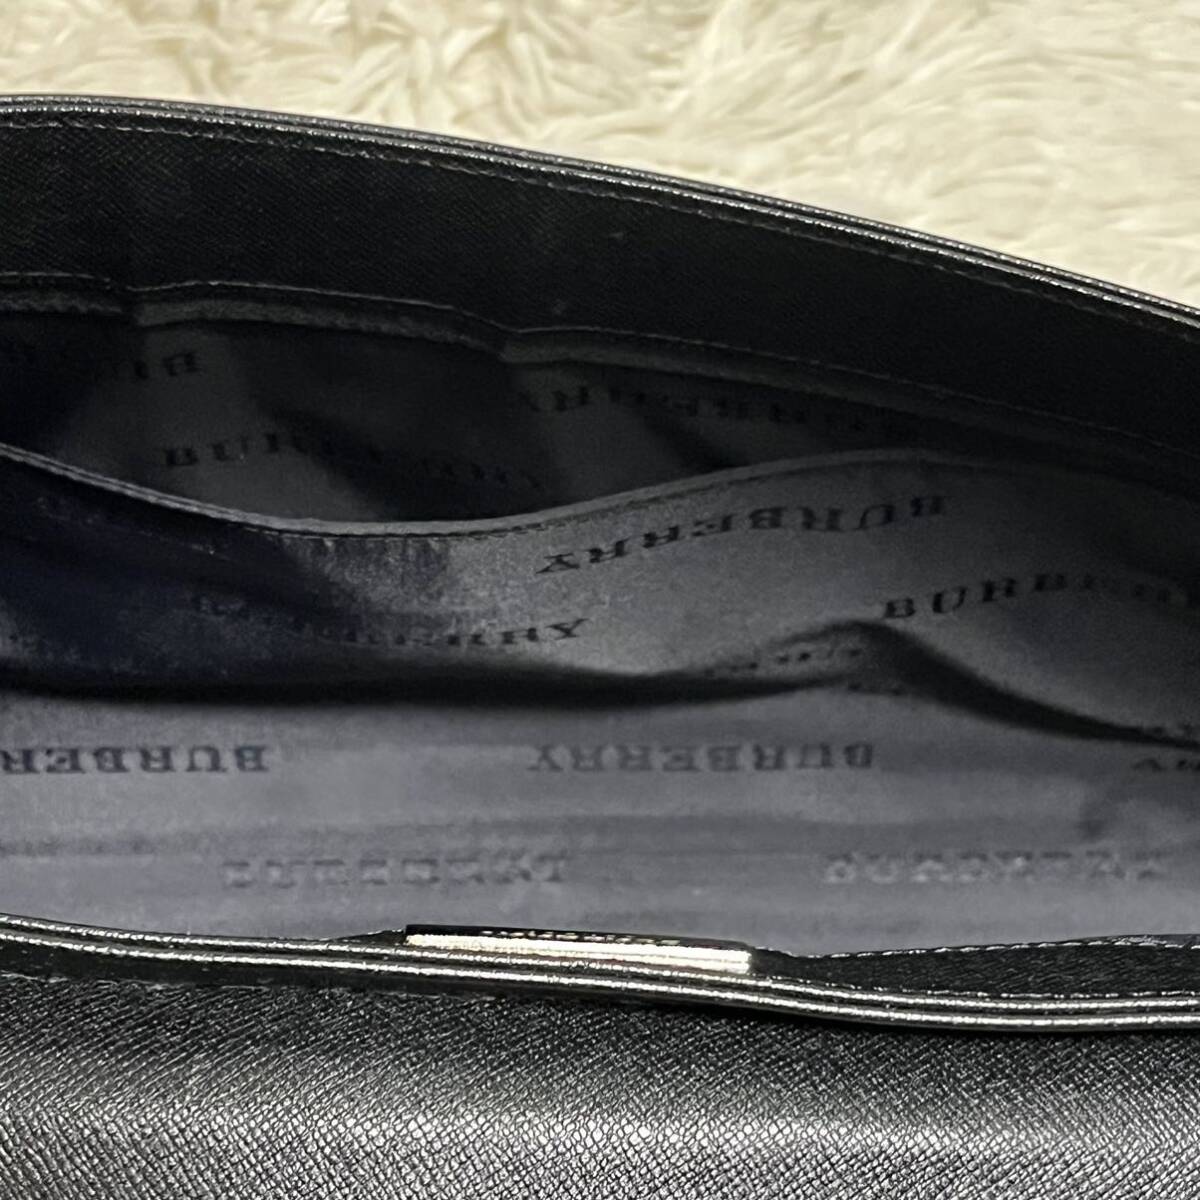 [ прекрасный товар ]Burberry Burberry one сумка на плечо плечо .. аксессуары сумка noba проверка кожа safia-no Logo металлические принадлежности ручная сумочка 